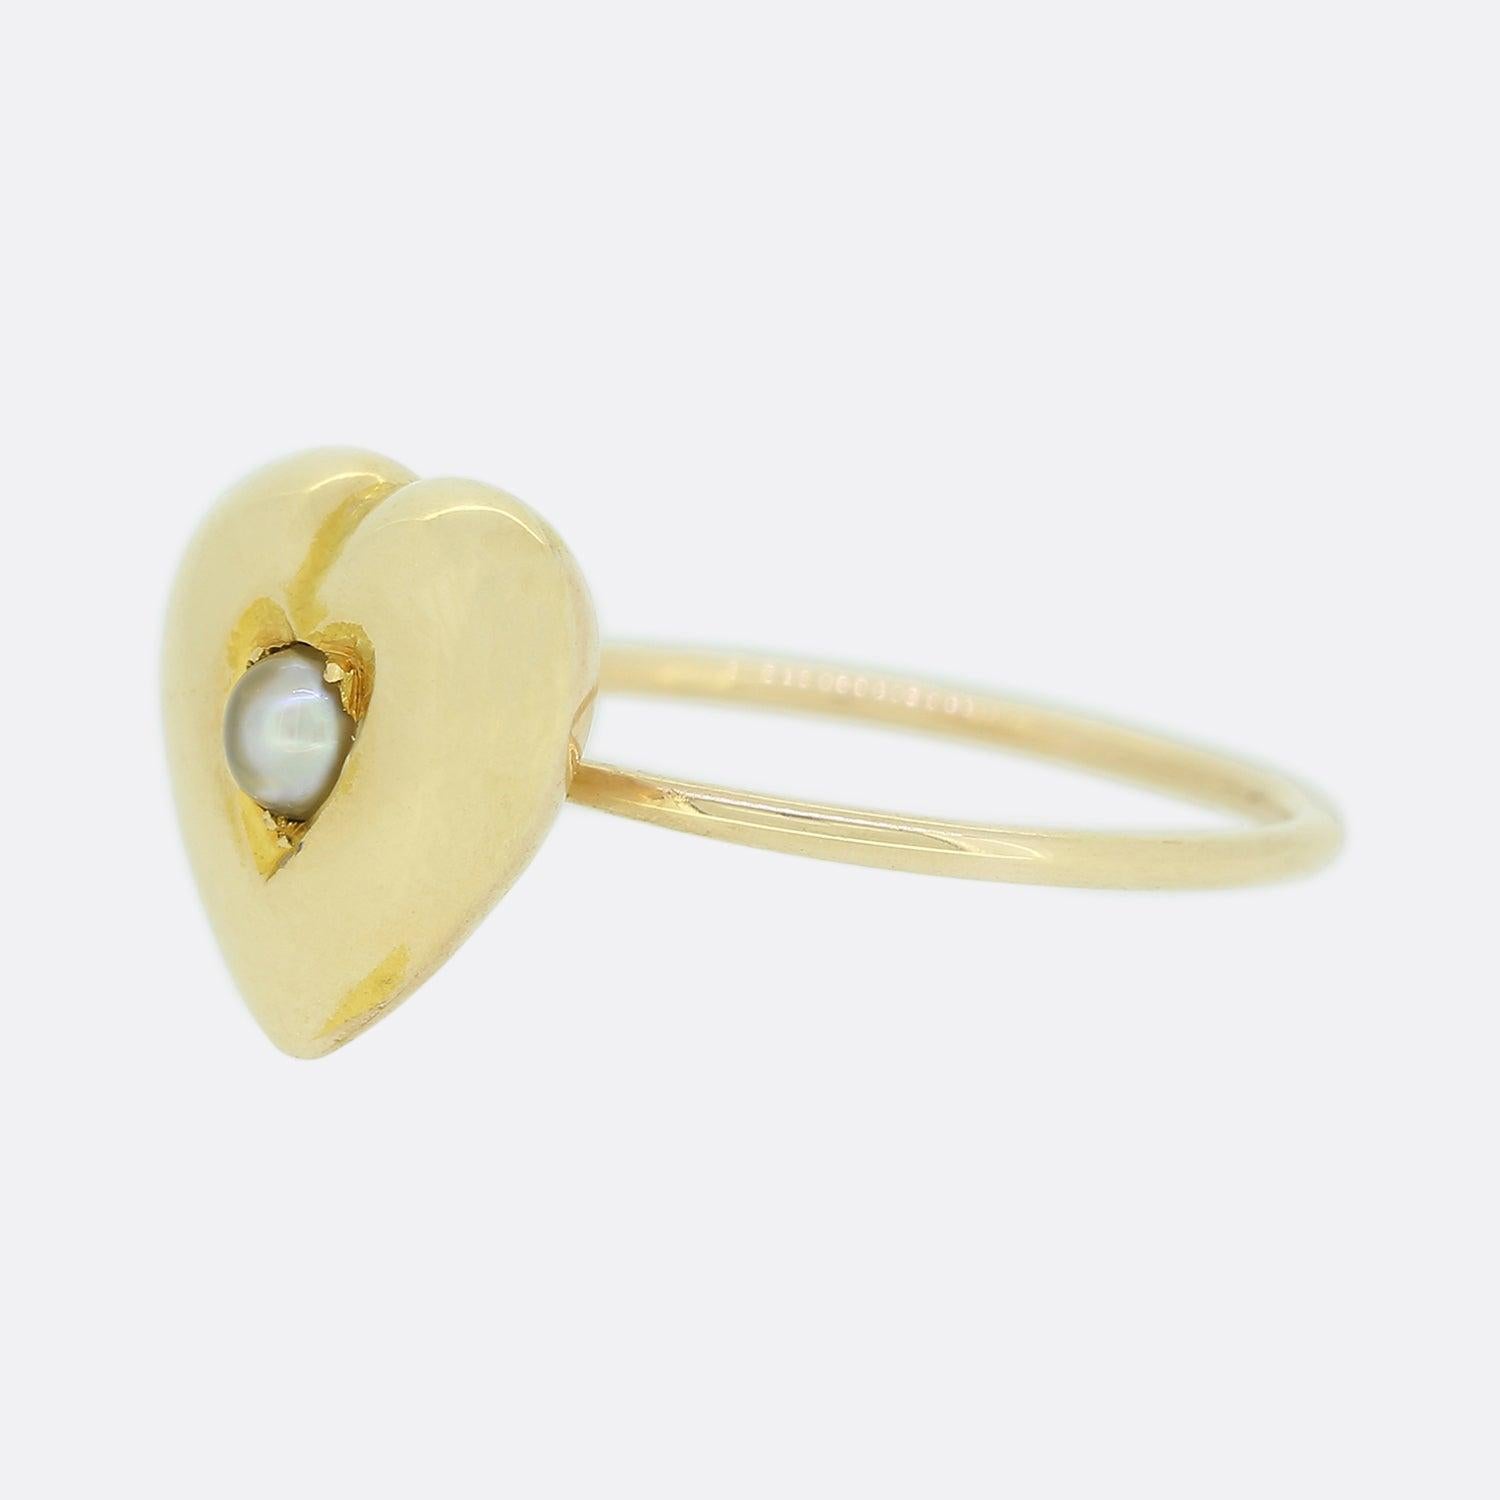 Dies ist ein schöner antiker Herzring. Der Ring zeigt eine zentrale Perle, die in eine herzförmige Goldfassung aus Roségold mit einem schlichten Roségoldband eingefasst ist. Dieser Ring war ursprünglich eine antike viktorianische Brosche, wurde aber